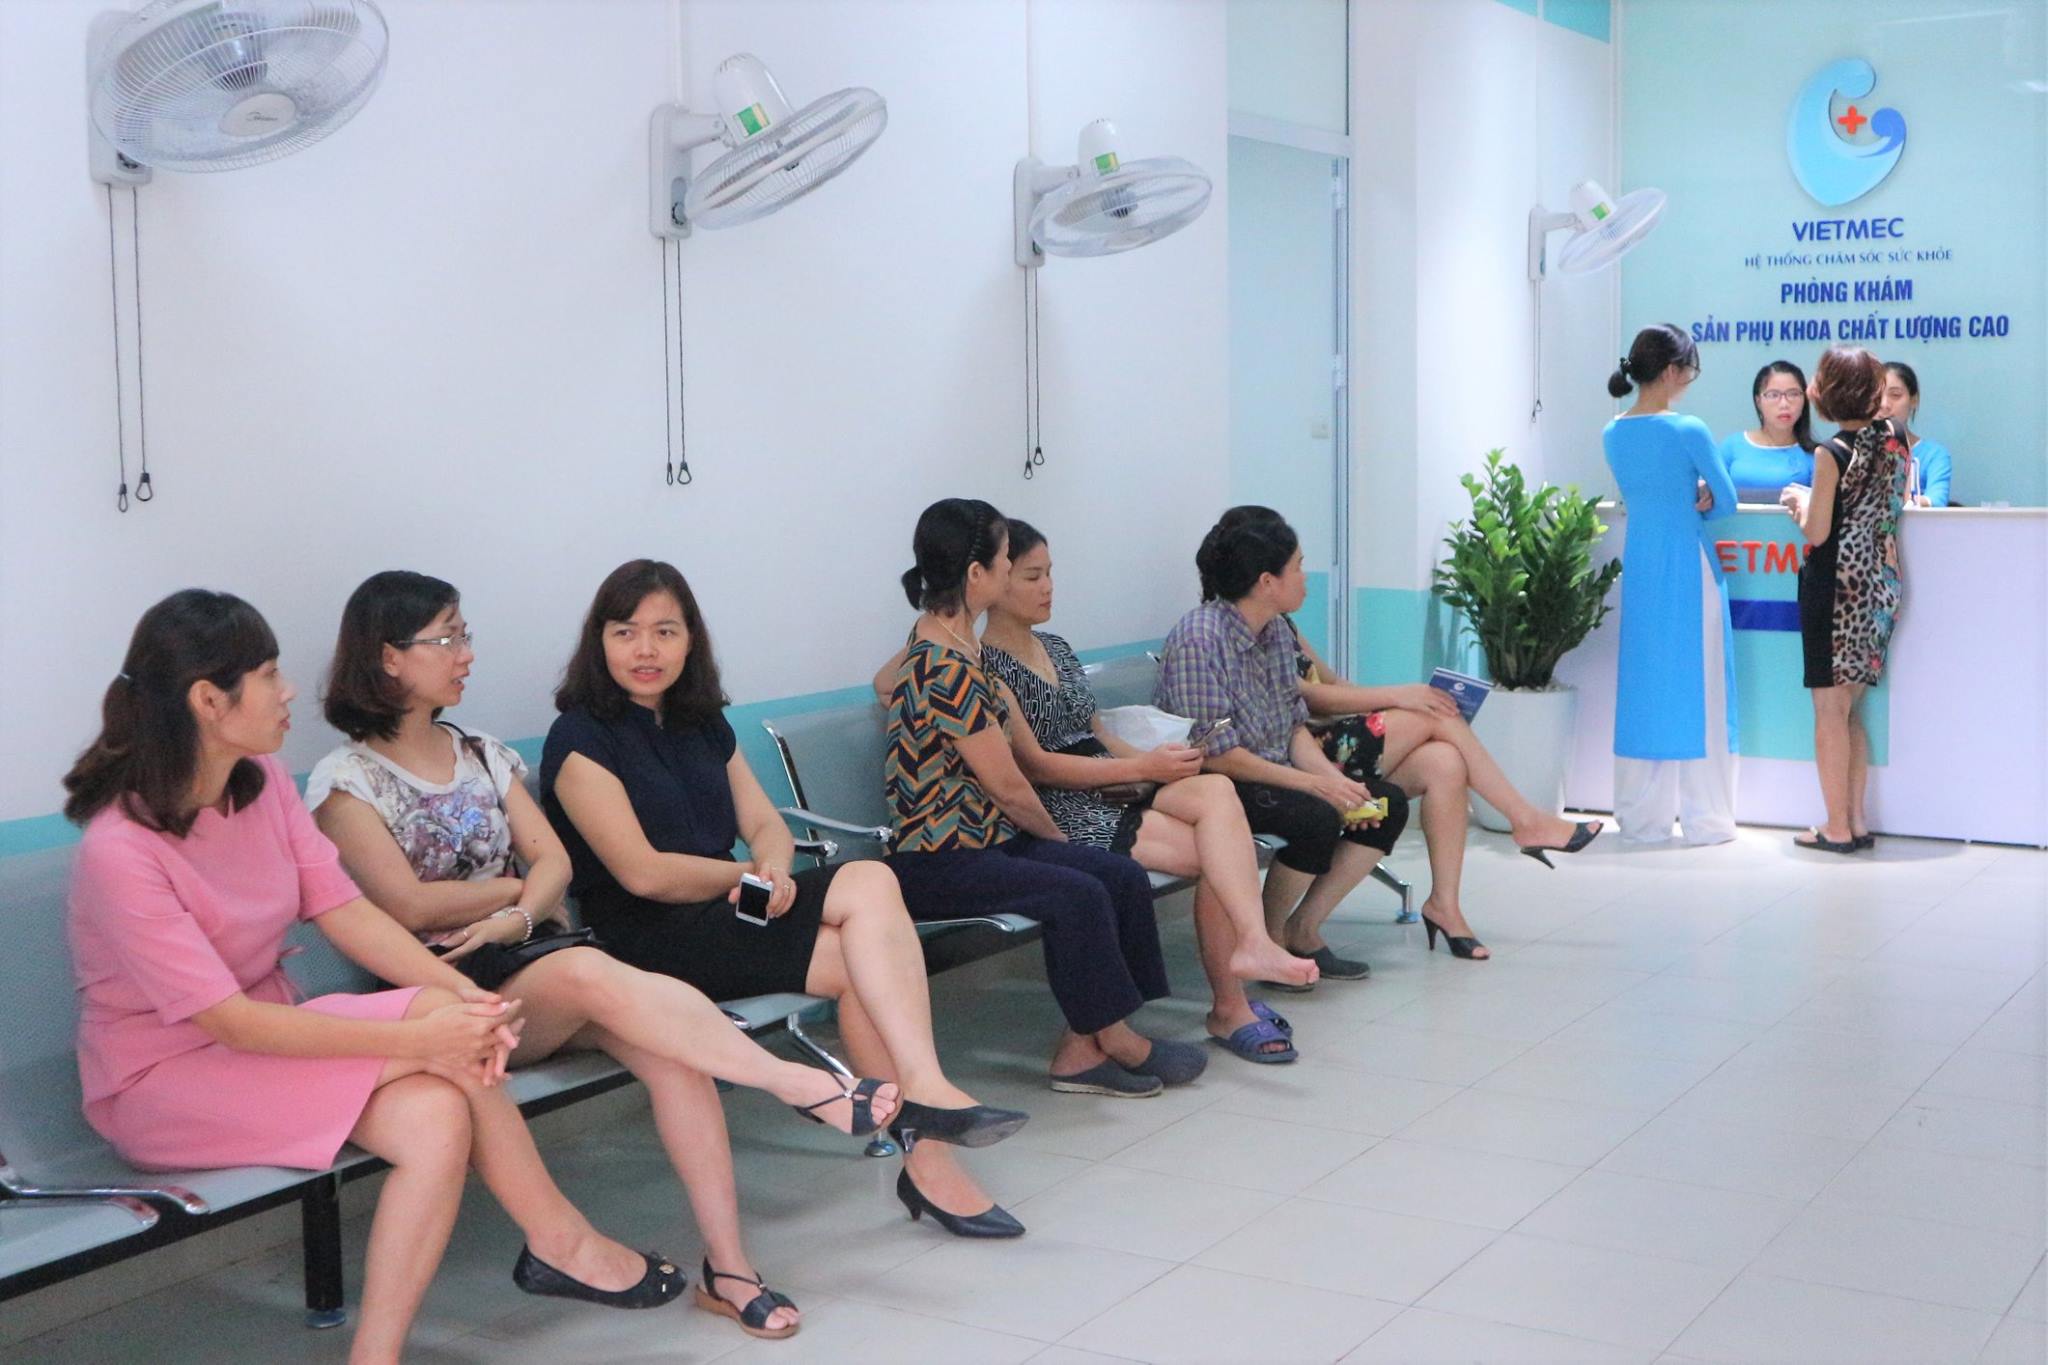 Phòng khám sản phụ khoa Vietmec là địa chỉ uy tín để cấy que tránh thai